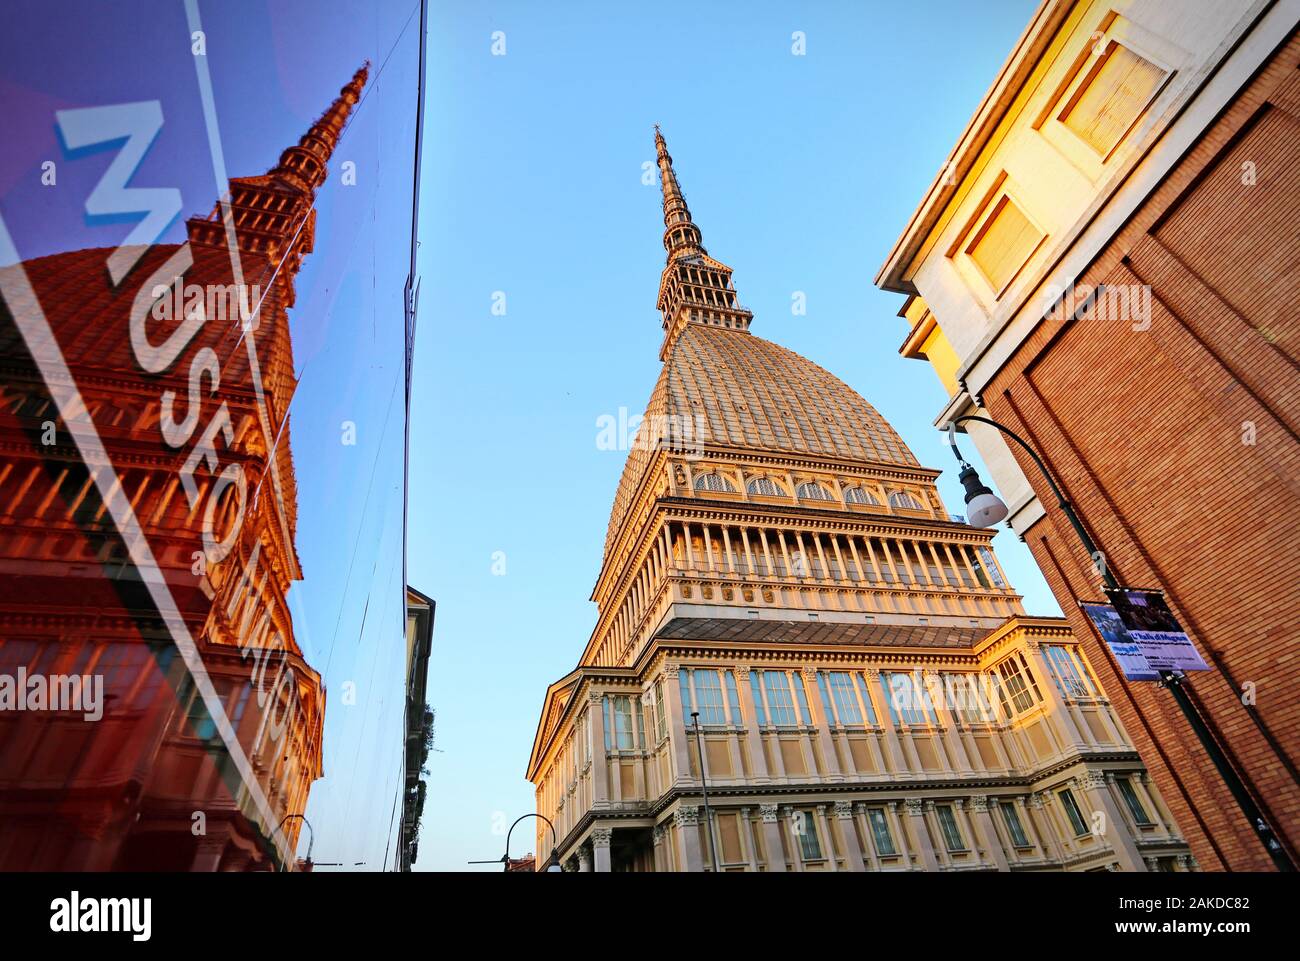 Die Mole Antonelliana ist das Symbol der Stadt Turin und im Inneren beherbergt sie das Museum des Kinos. Turin, Italien - April 2018 Stockfoto